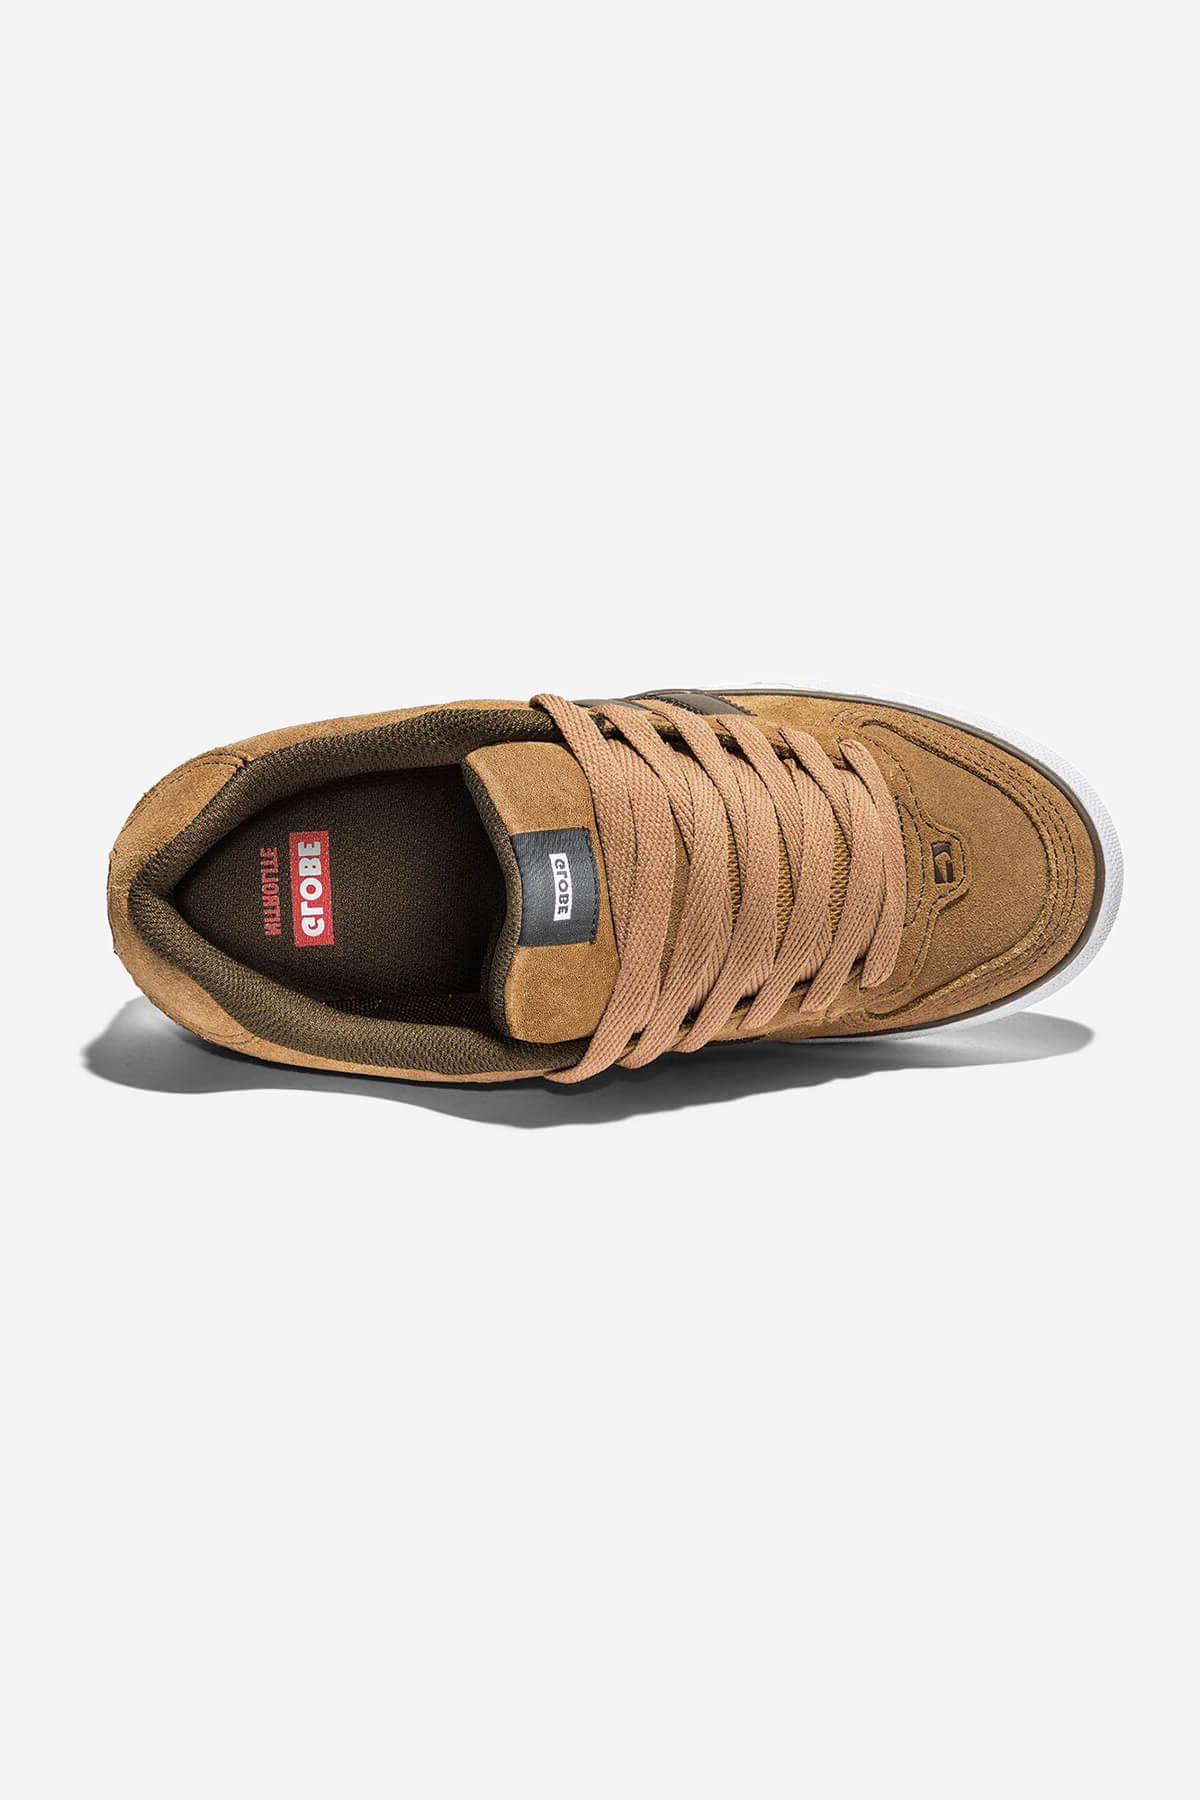 encore-2 tan brown skateboard shoes